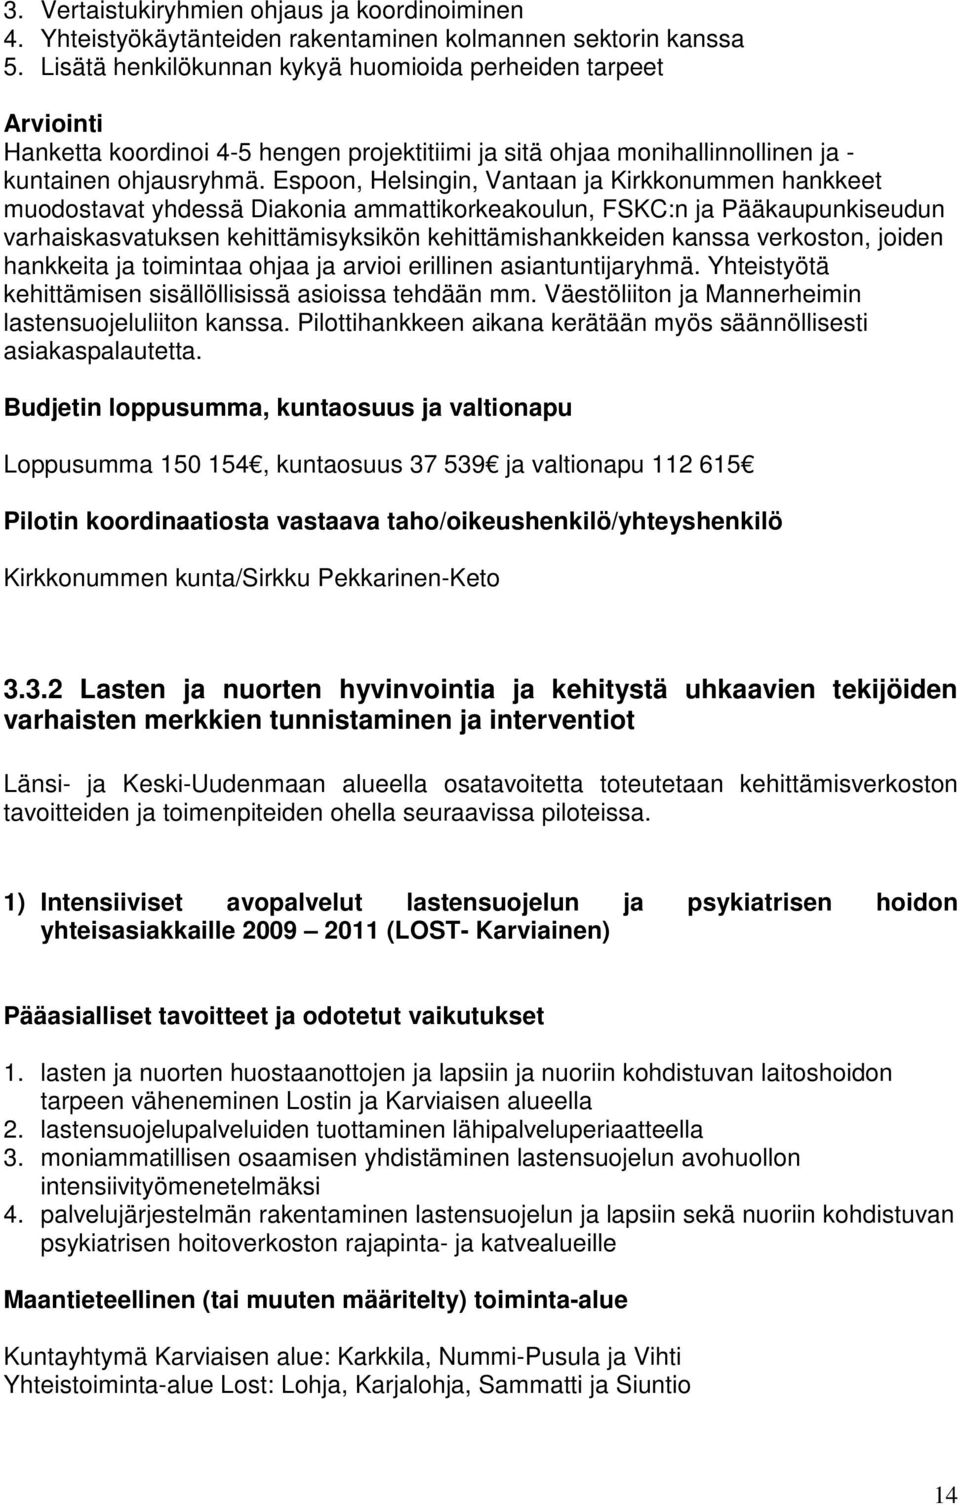 Espoon, Helsingin, Vantaan ja Kirkkonummen hankkeet muodostavat yhdessä Diakonia ammattikorkeakoulun, FSKC:n ja Pääkaupunkiseudun varhaiskasvatuksen kehittämisyksikön kehittämishankkeiden kanssa